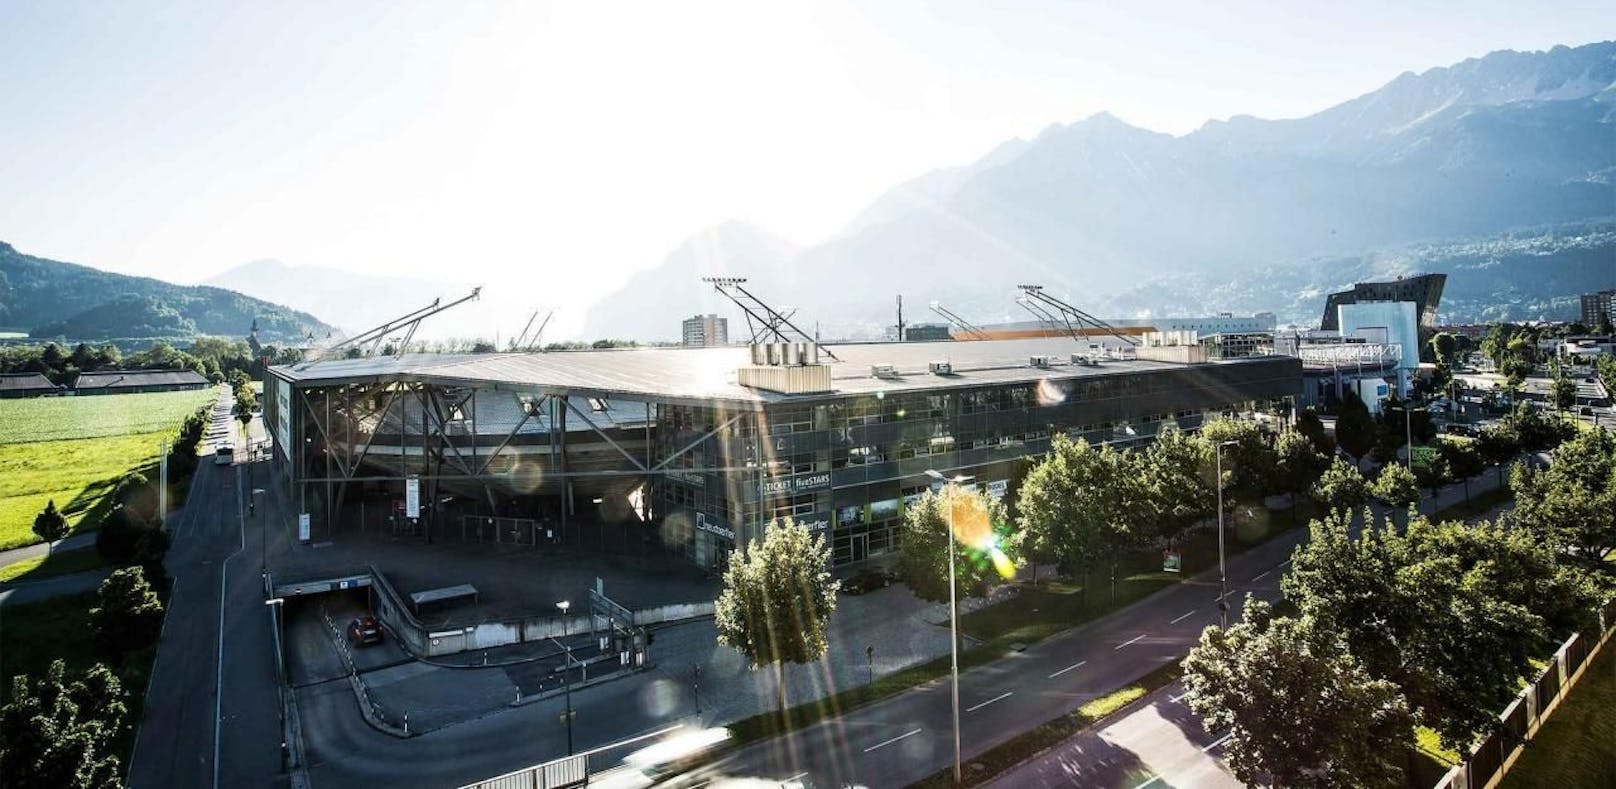 Ab dem 22. Februar wird auch das Tivoli Stadion in Innsbruck (Tirol) rauchfrei. Das Verbot umfasst auch E-Zigaretten.